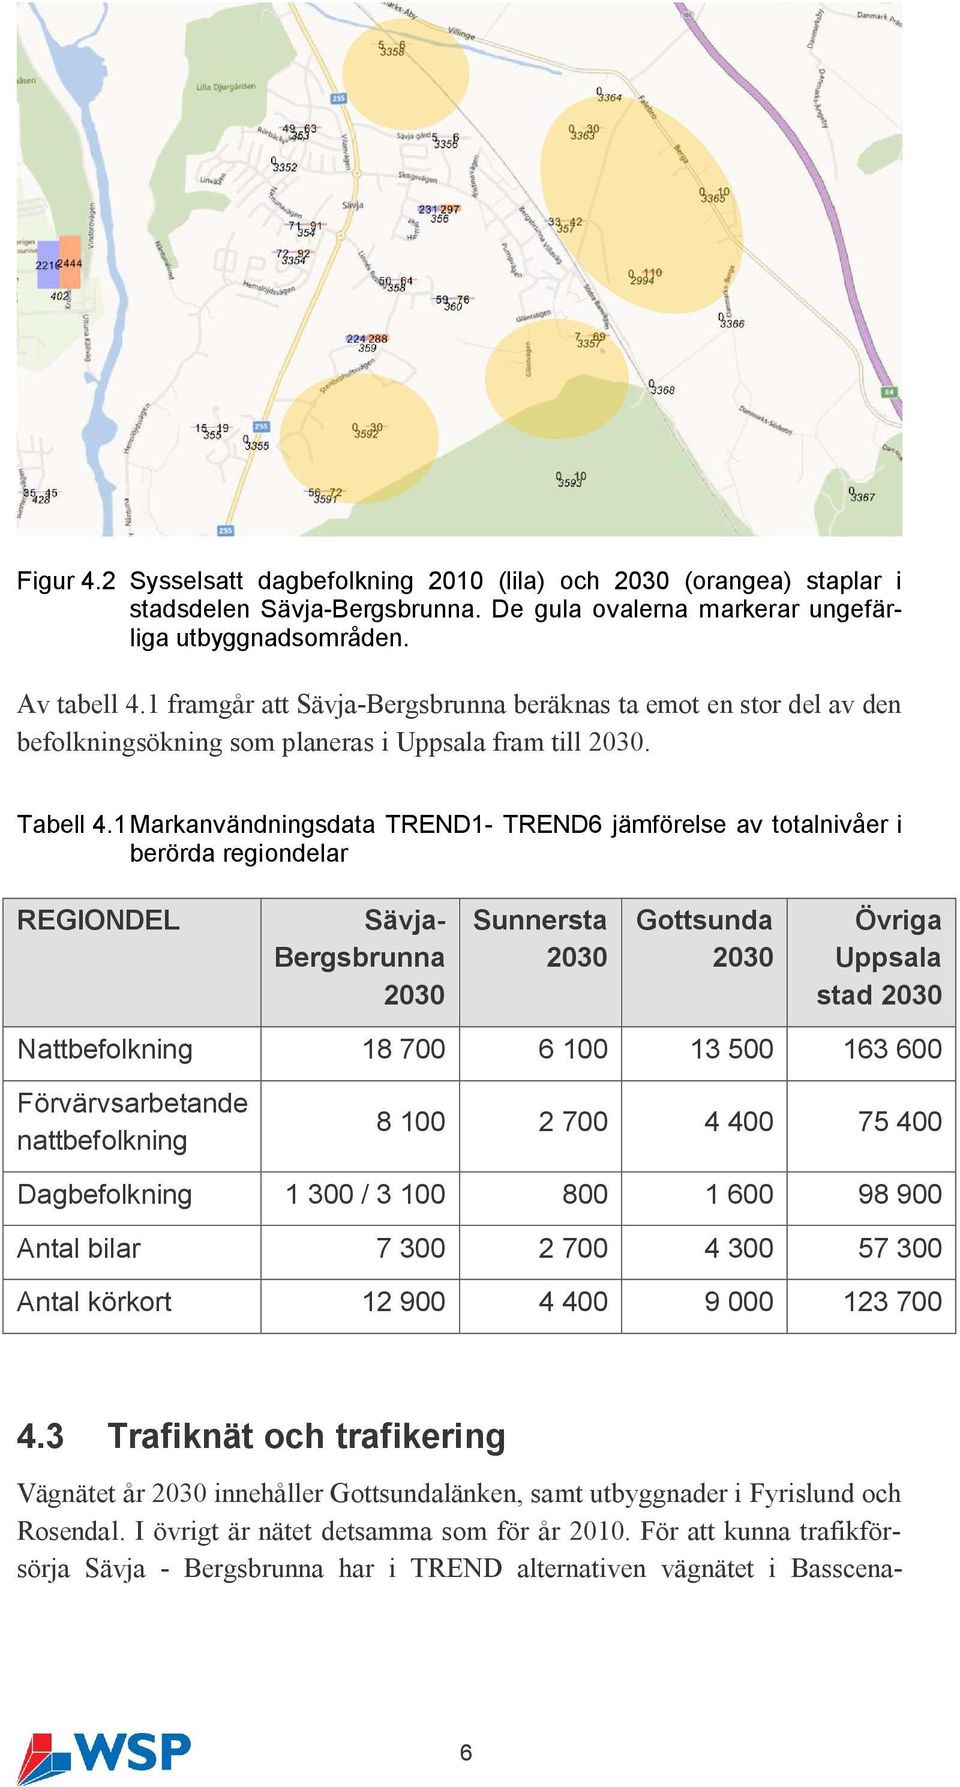 1 Markanvändningsdata TREND1- TREND6 jämförelse av totalnivåer i berörda regiondelar REGIONDEL Sävja- Bergsbrunna 2030 Sunnersta 2030 Gottsunda 2030 Övriga Uppsala stad 2030 Nattbefolkning 18 700 6